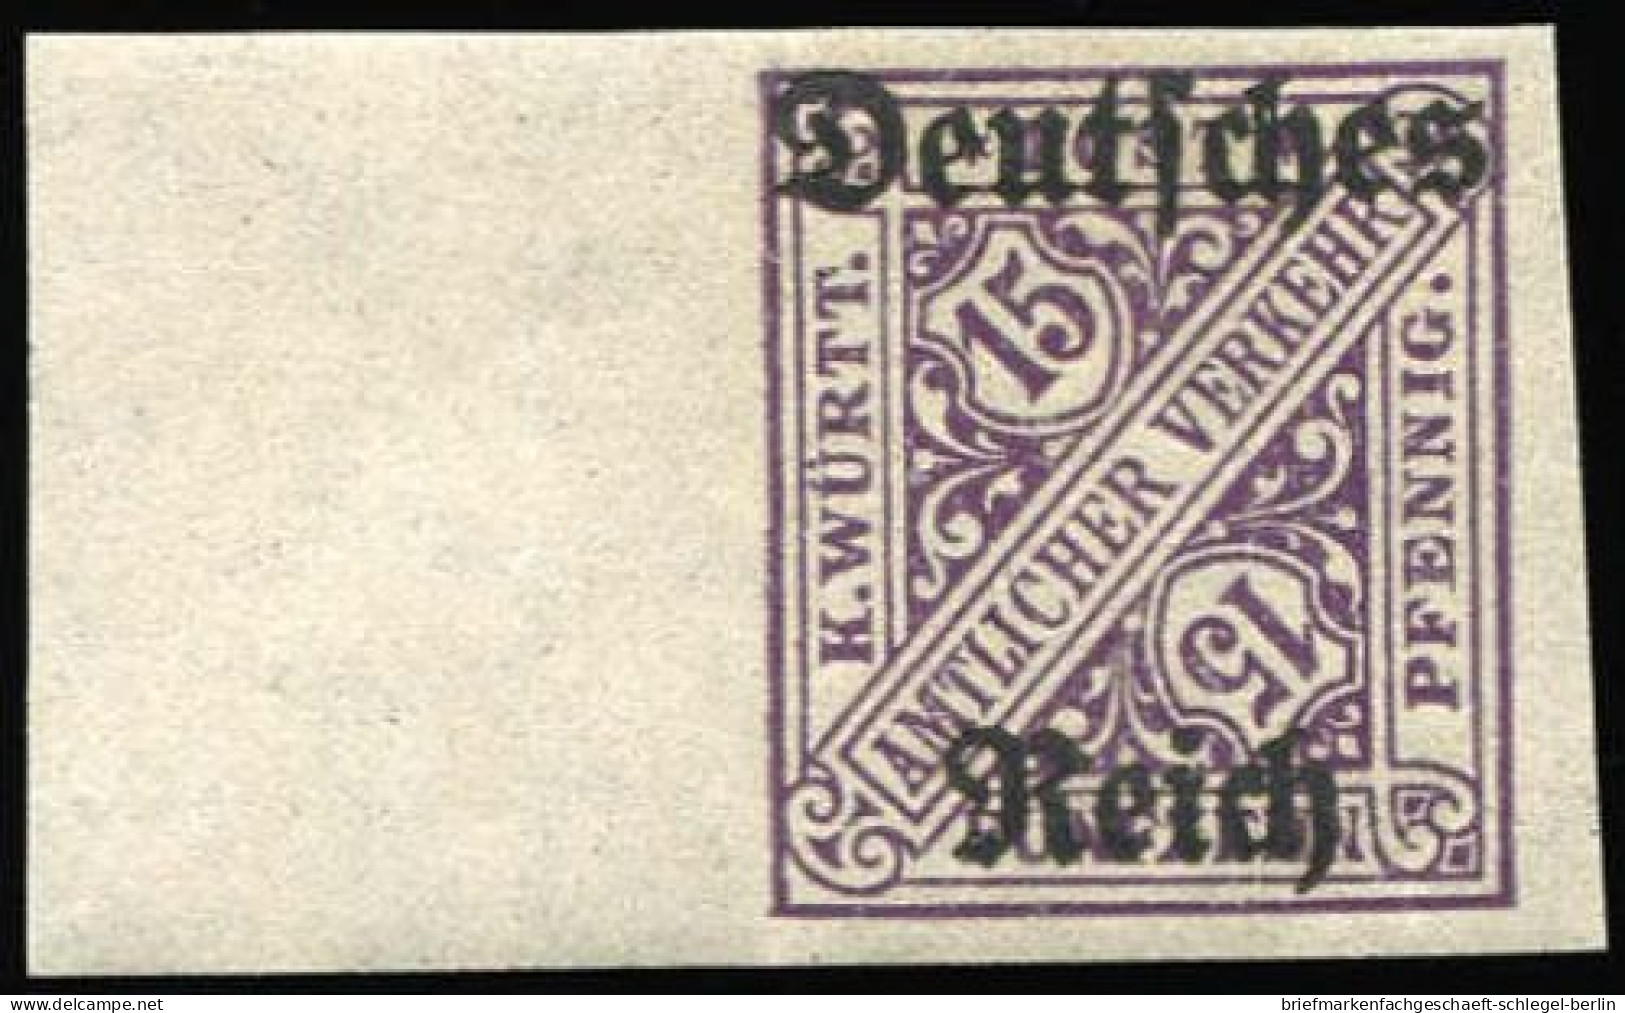 Deutsches Reich, 1920, 59U, Postfrisch - Dienstmarken